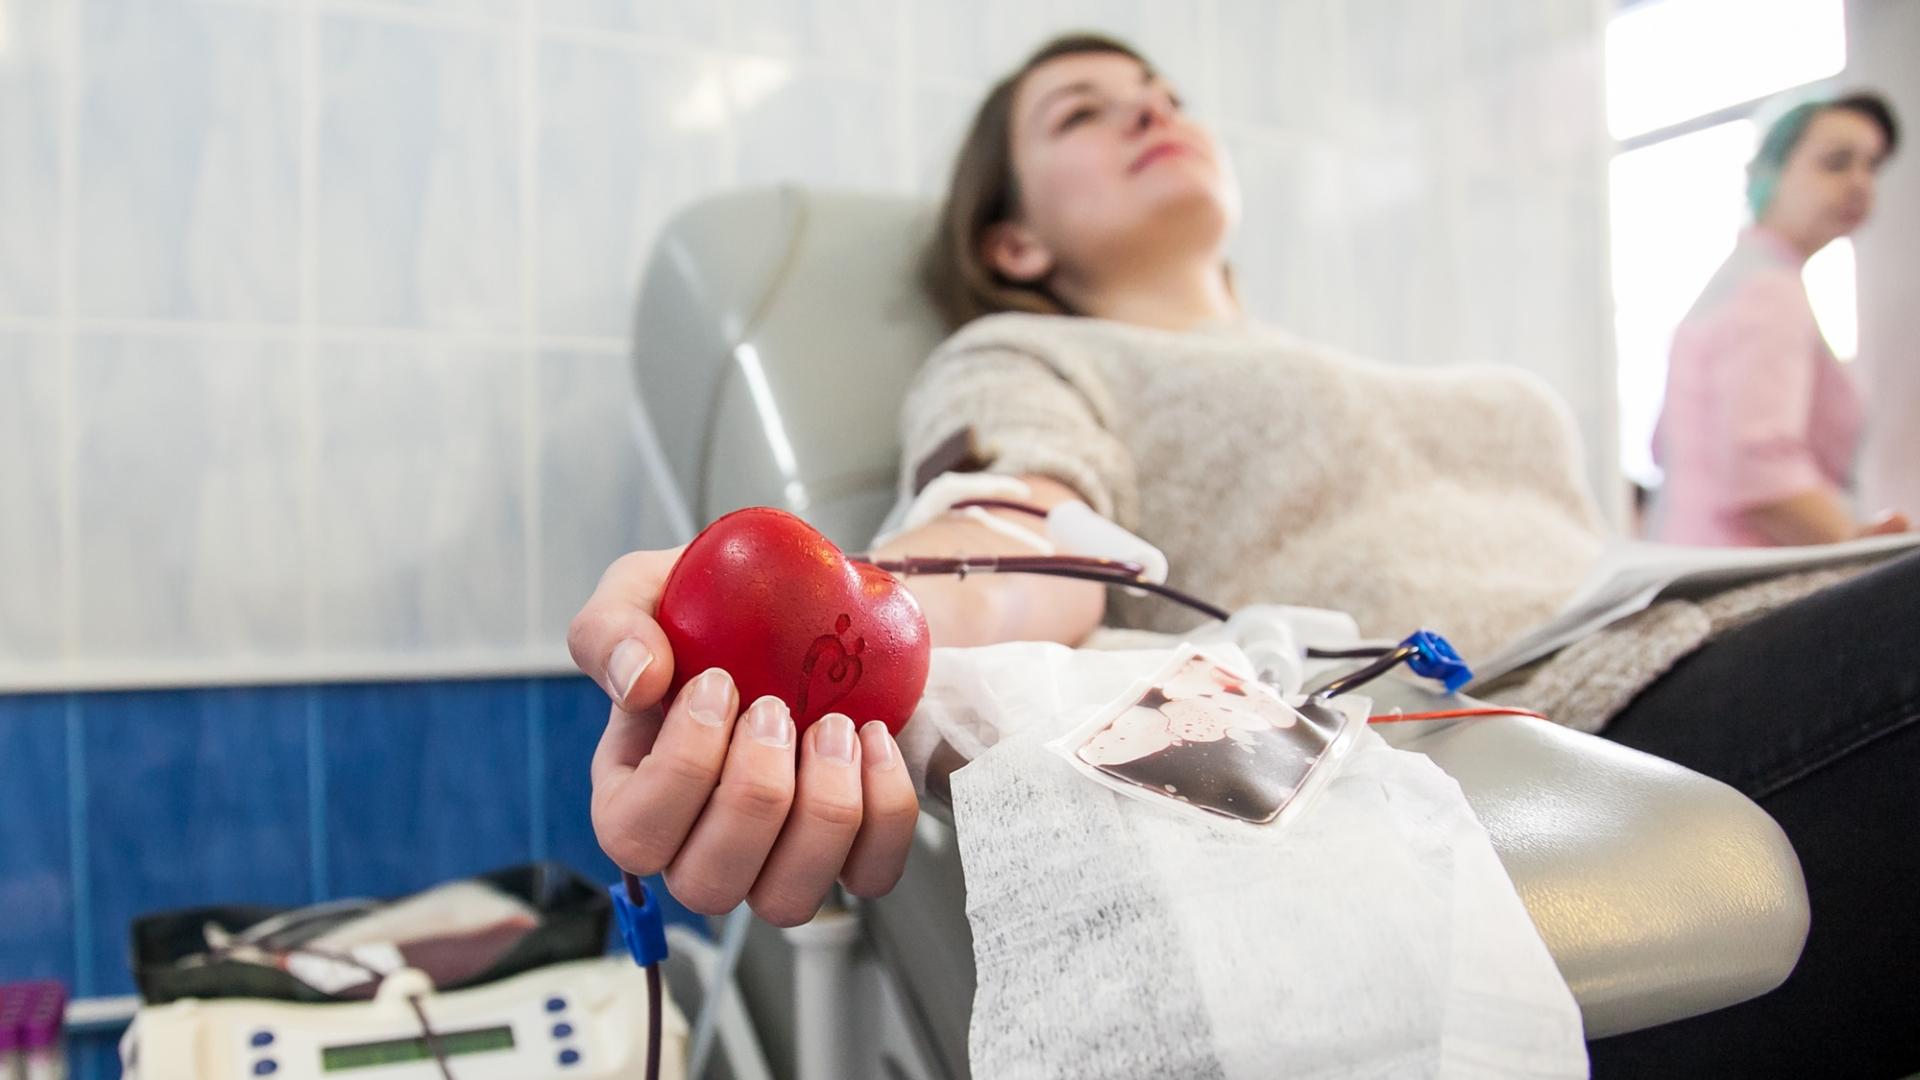 Кофеин, декстрометрофан и Ксанакс. Что может содержать донорская кровь?